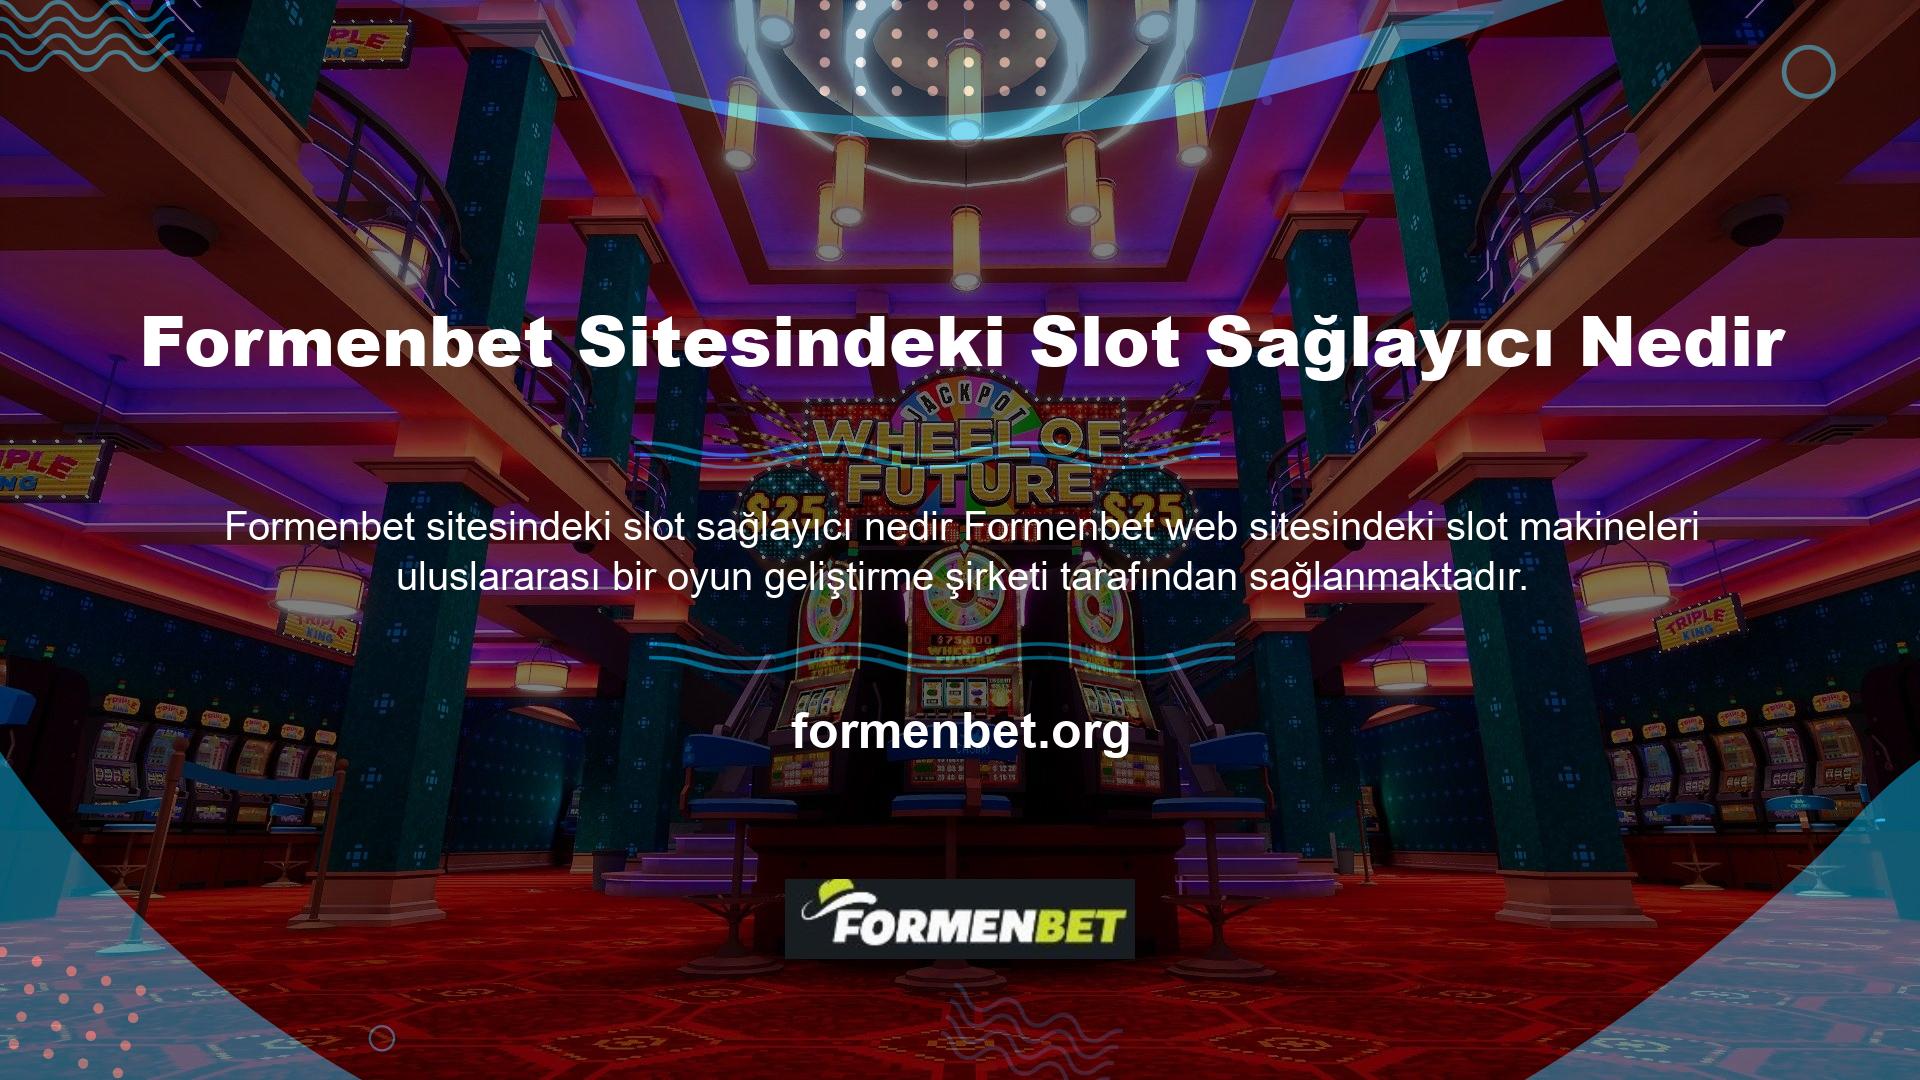 Formenbet sitesi aşağıdaki slot sağlayıcılarla çalışmaktadır çünkü bu şirketlerin oyunları çok kaliteli ve güvenilirdir